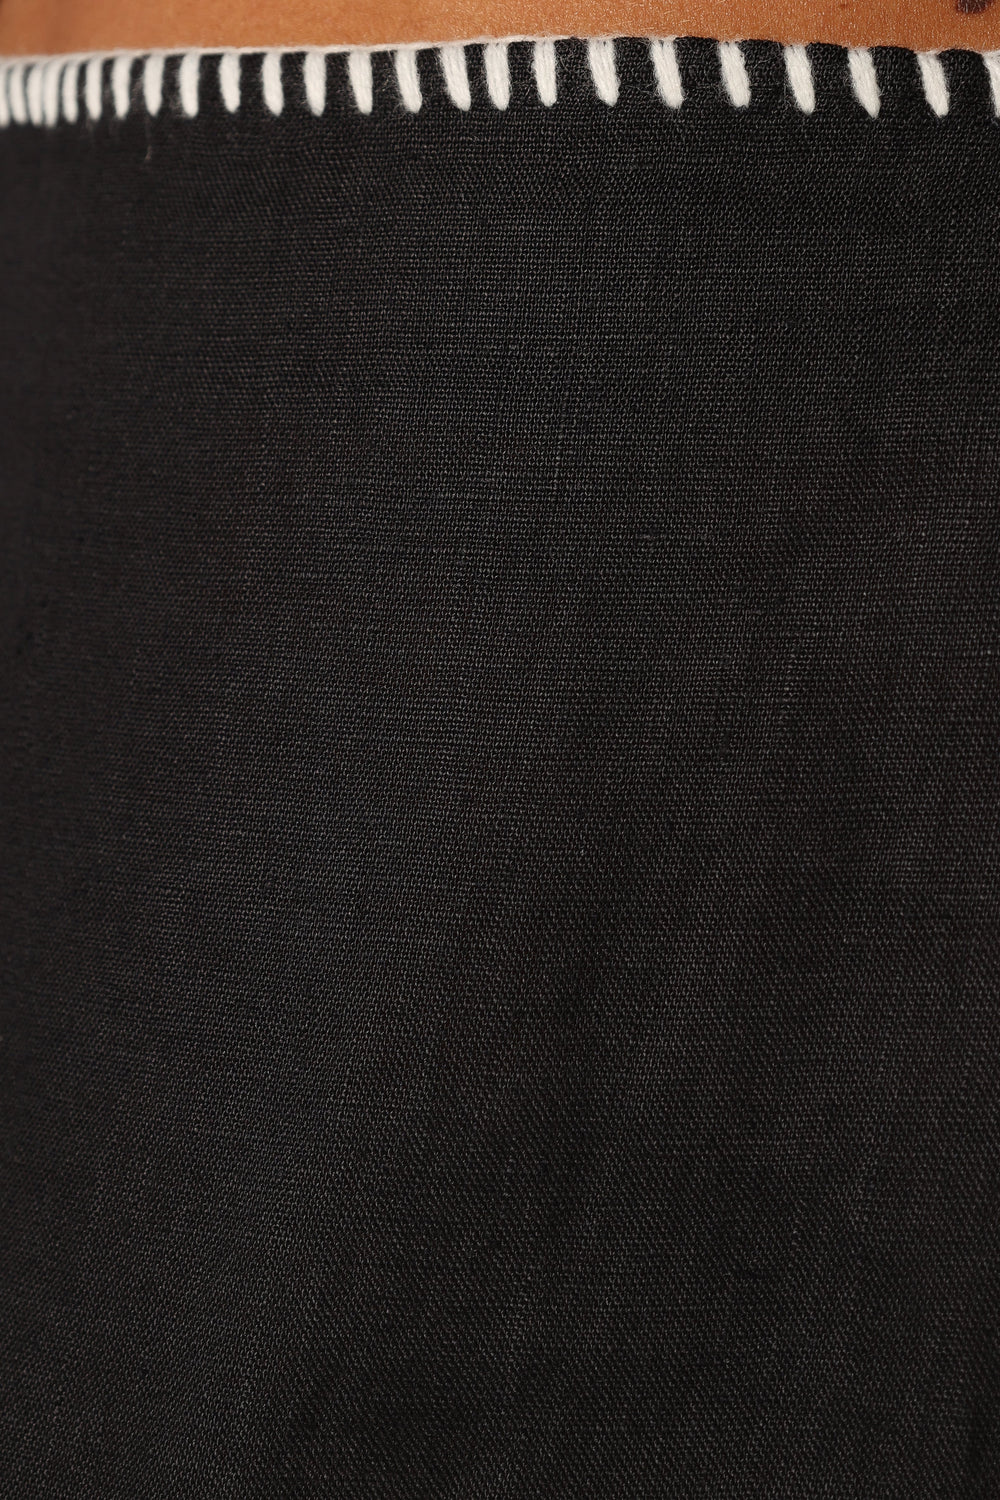 BOTTOMS @Odette Midi Skirt - Black (Hold for Sundial)